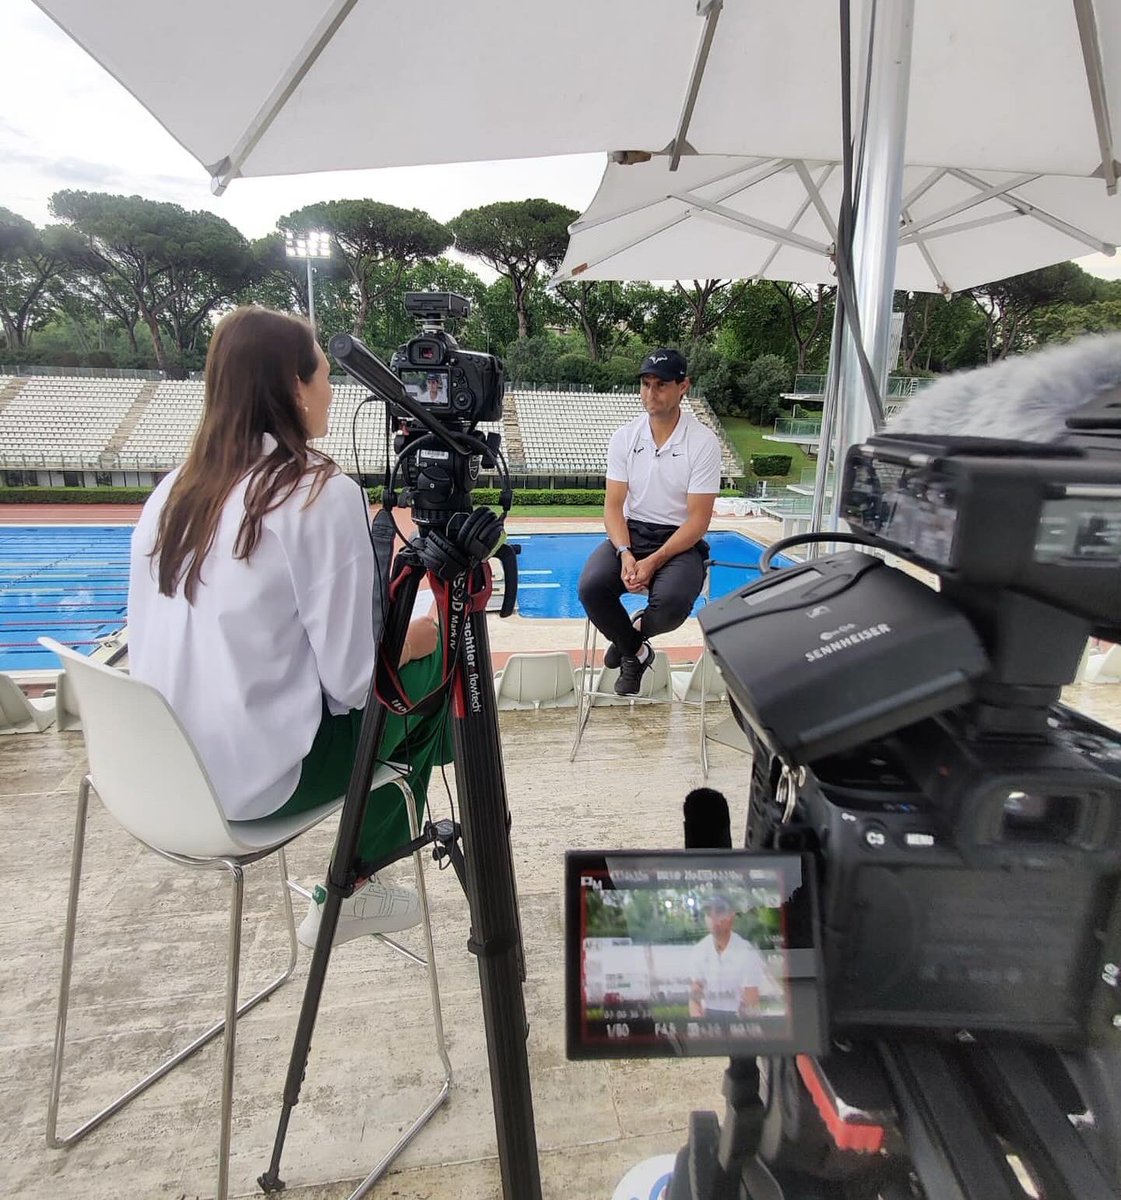 🎾 À 15 jours de #RolandGarros @RafaelNadal se confie dans un entretien exclusif à retrouver dimanche soir dans #Stade2 

#Nadal #tennis #ATP #francetv